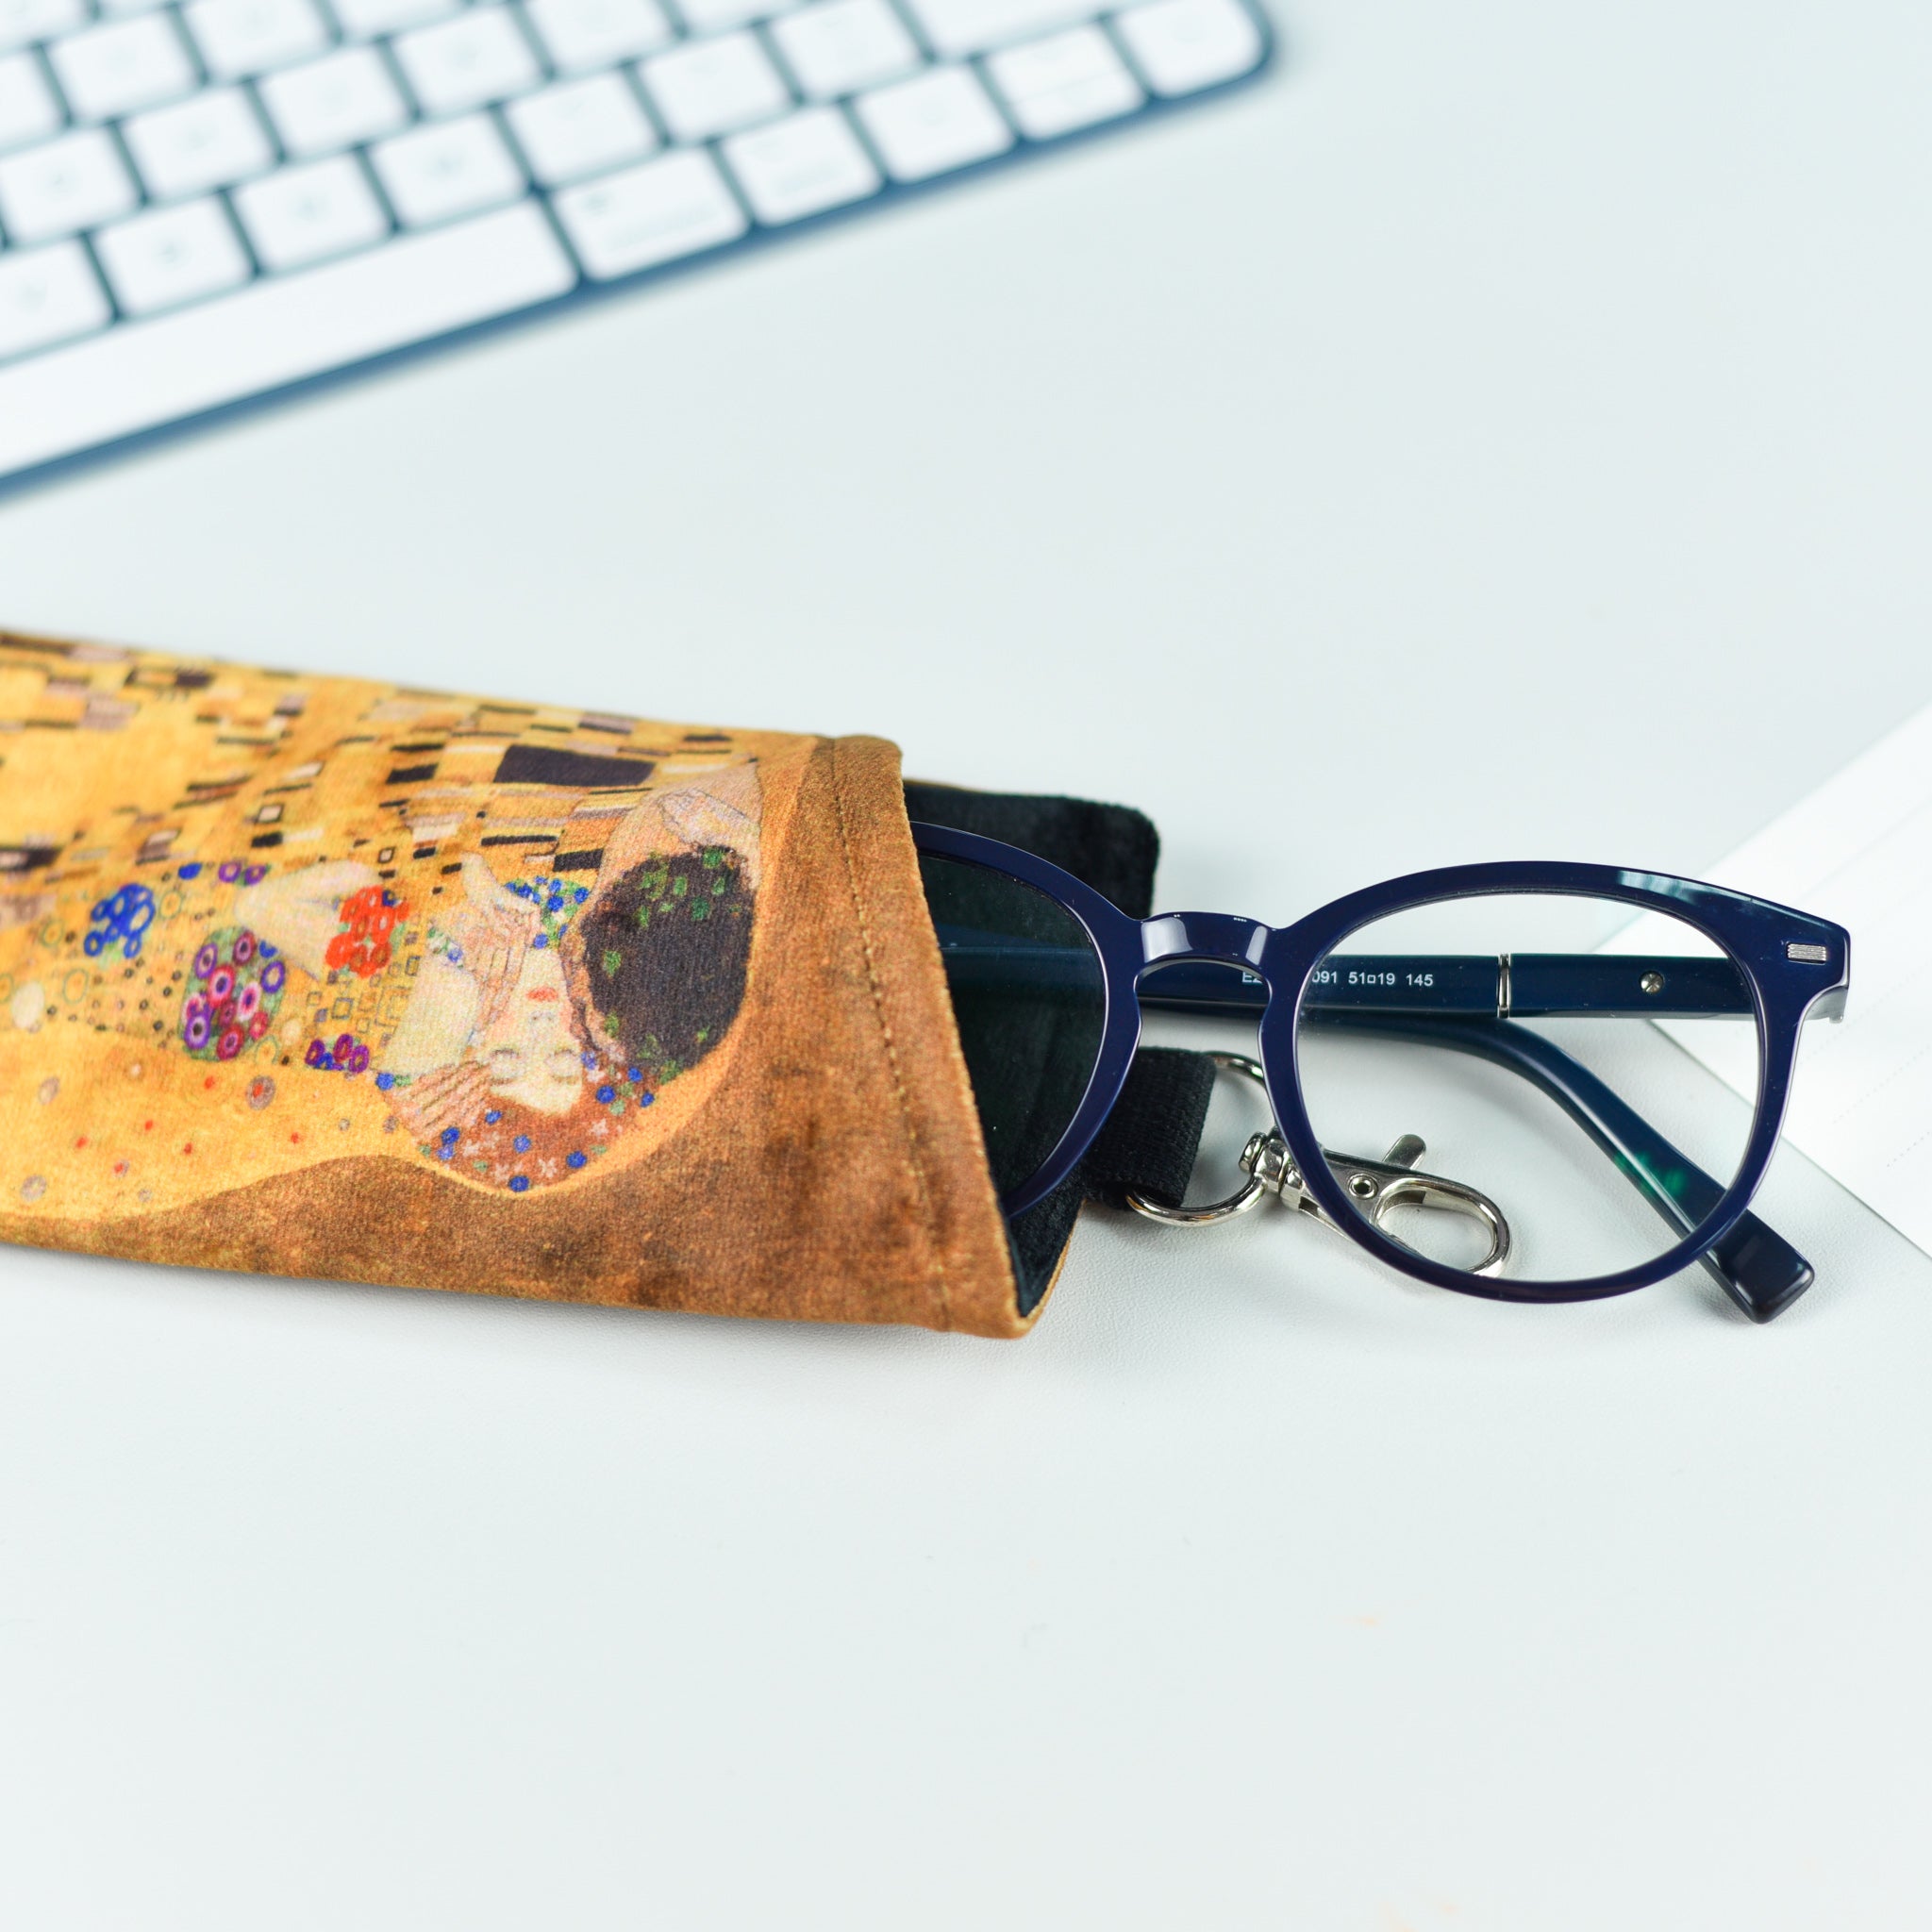 Glasses case Gustav Klimt "The Kiss"